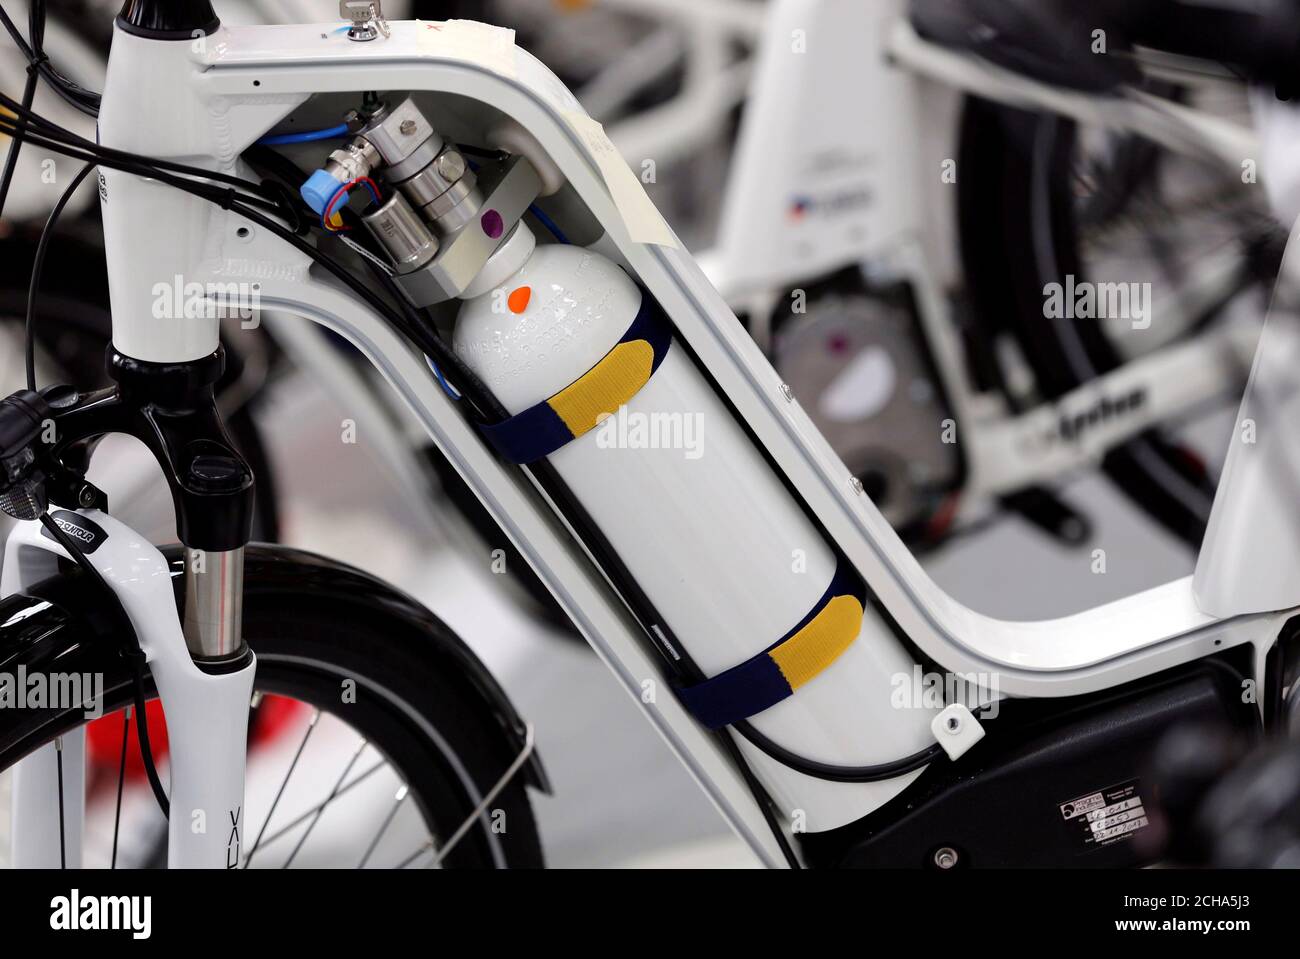 Ein Alpha-Fahrrad, das erste industrialisierte Fahrrad, das eine Wasserstoff-Brennstoffzelle  verwendet, wird am 15. Januar 2018 im Pragma Industries-Werk in Biarritz,  Frankreich, ausgestellt. Bild aufgenommen am 15. Januar 2018. REUTERS/Regis  Duvignau ...